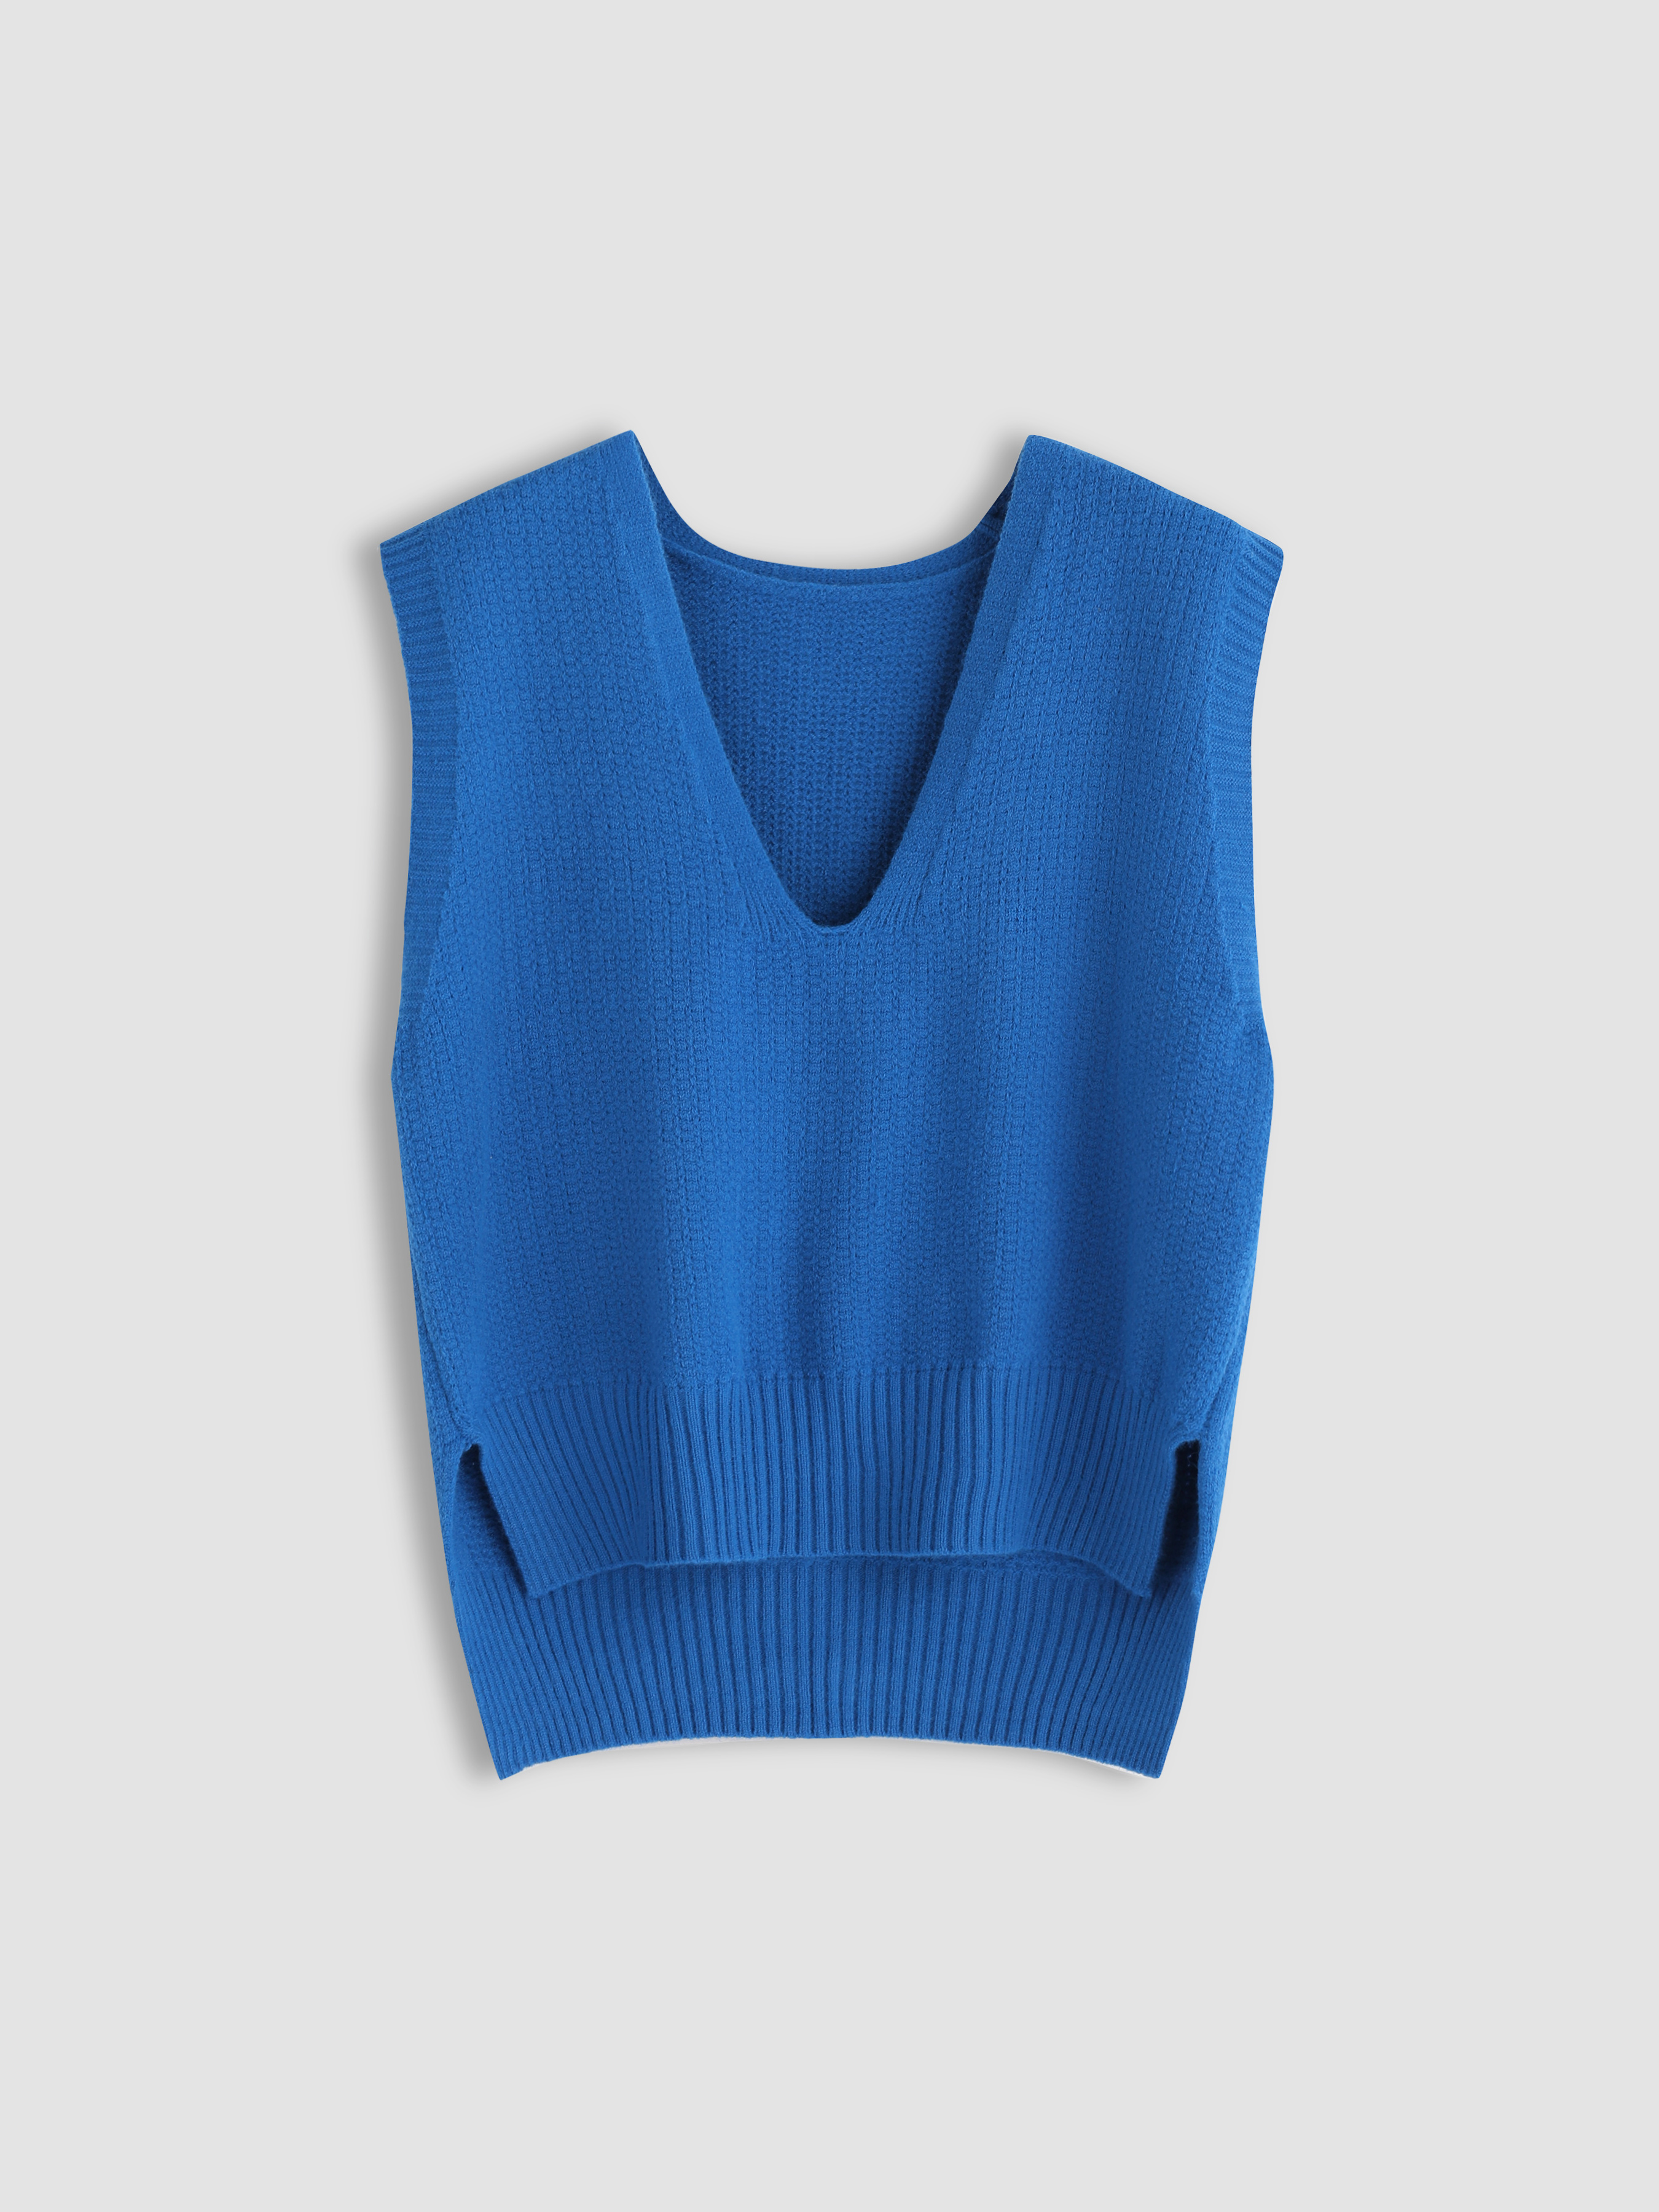 Solid Blue Knitted Vest - Cider